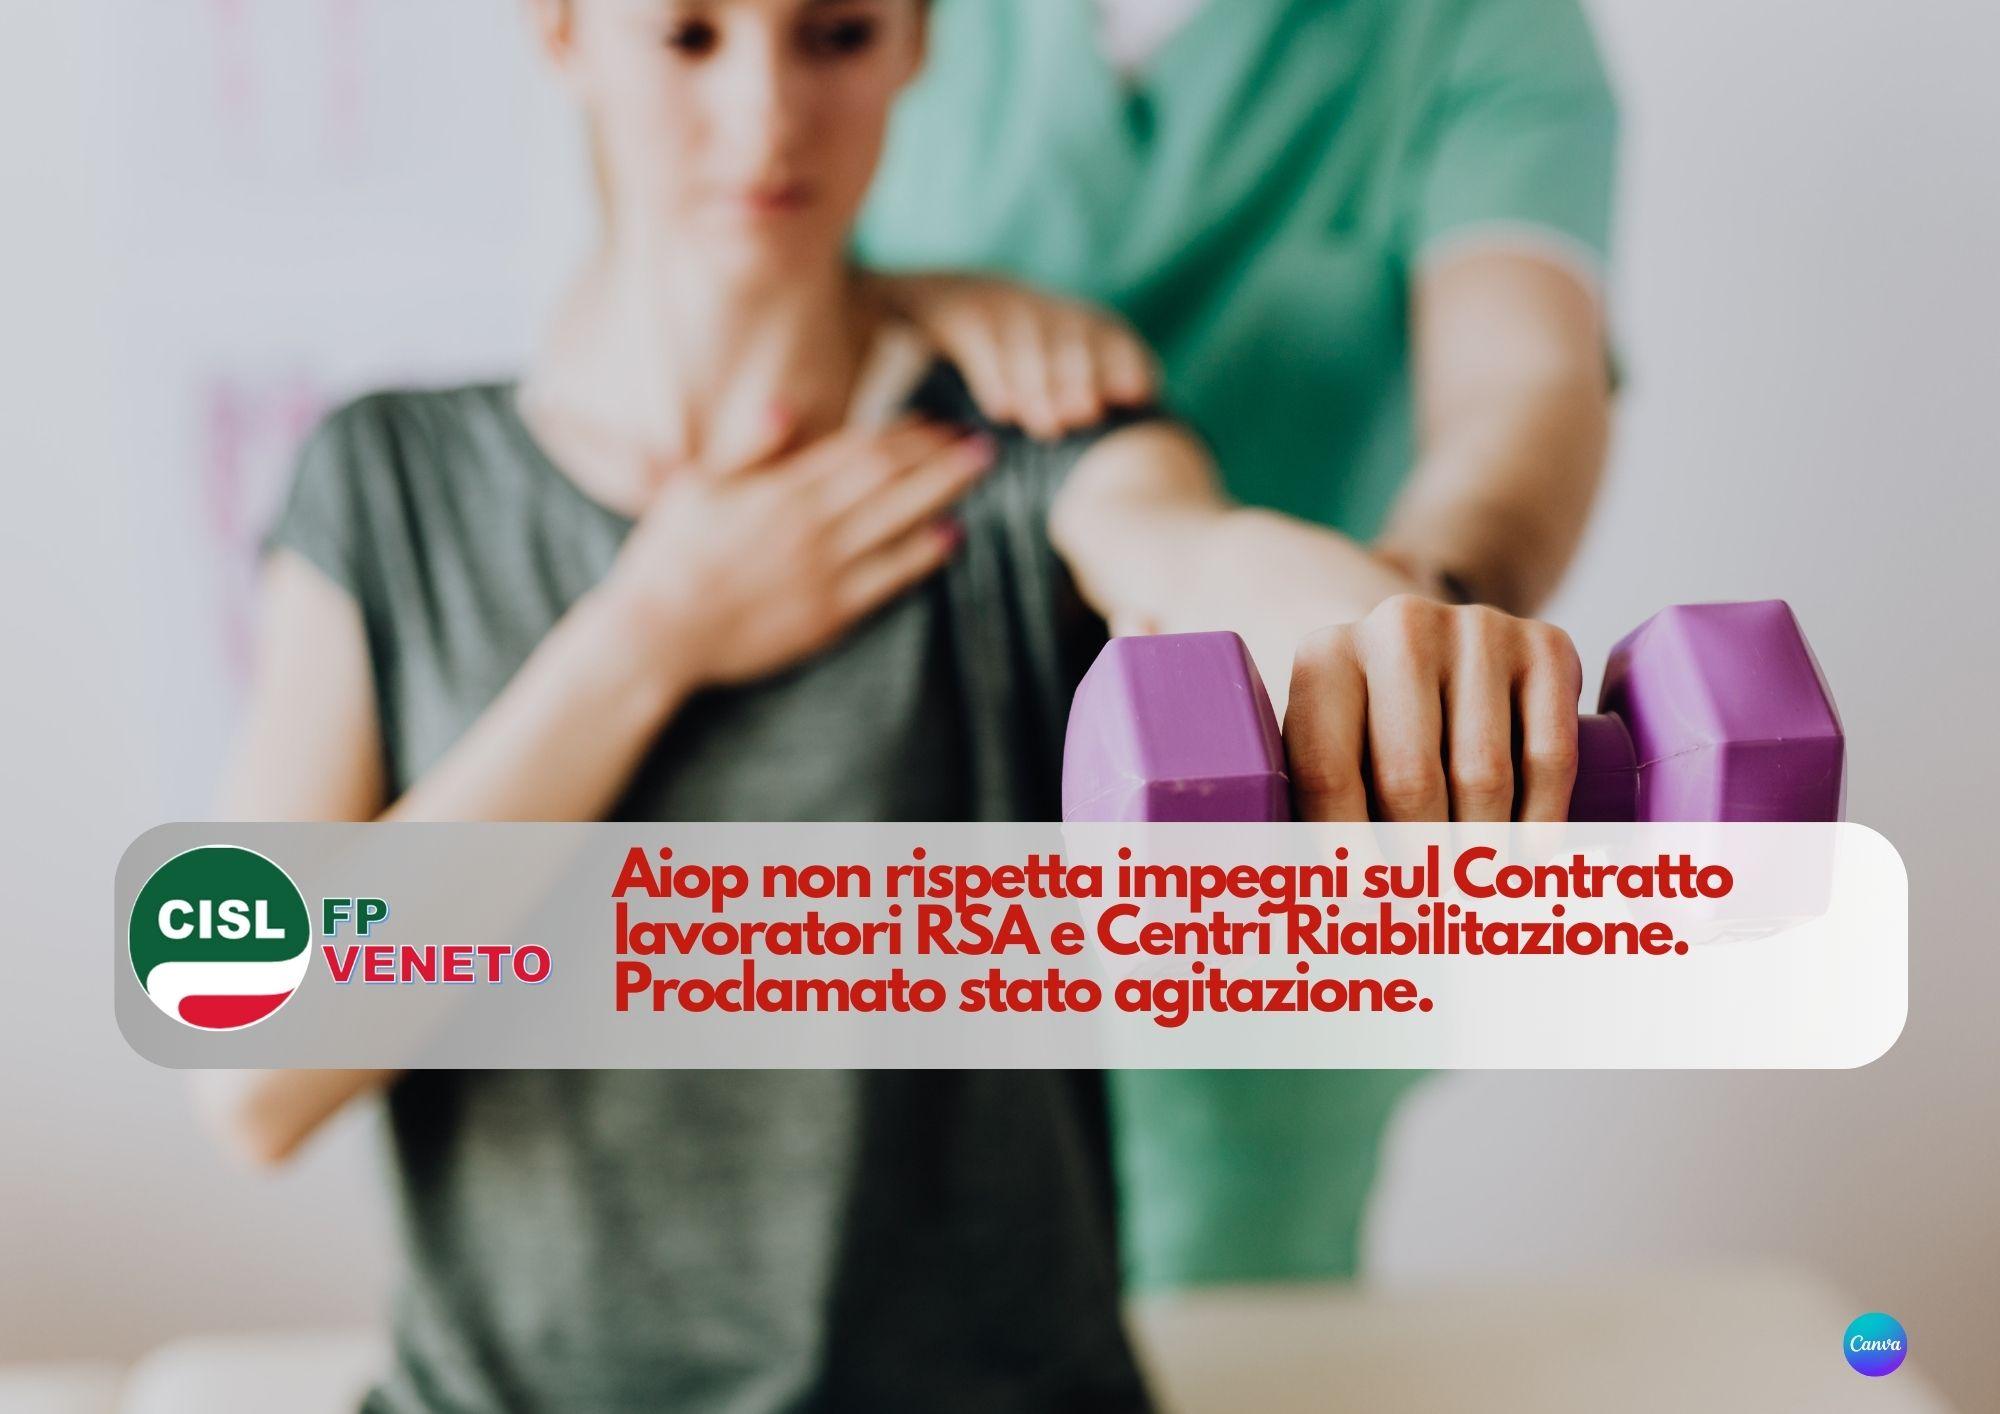 CISL FP Veneto. Aiop non rispetta impegni sul Contratto lavoratori RSA. Proclamato stato agitazione.